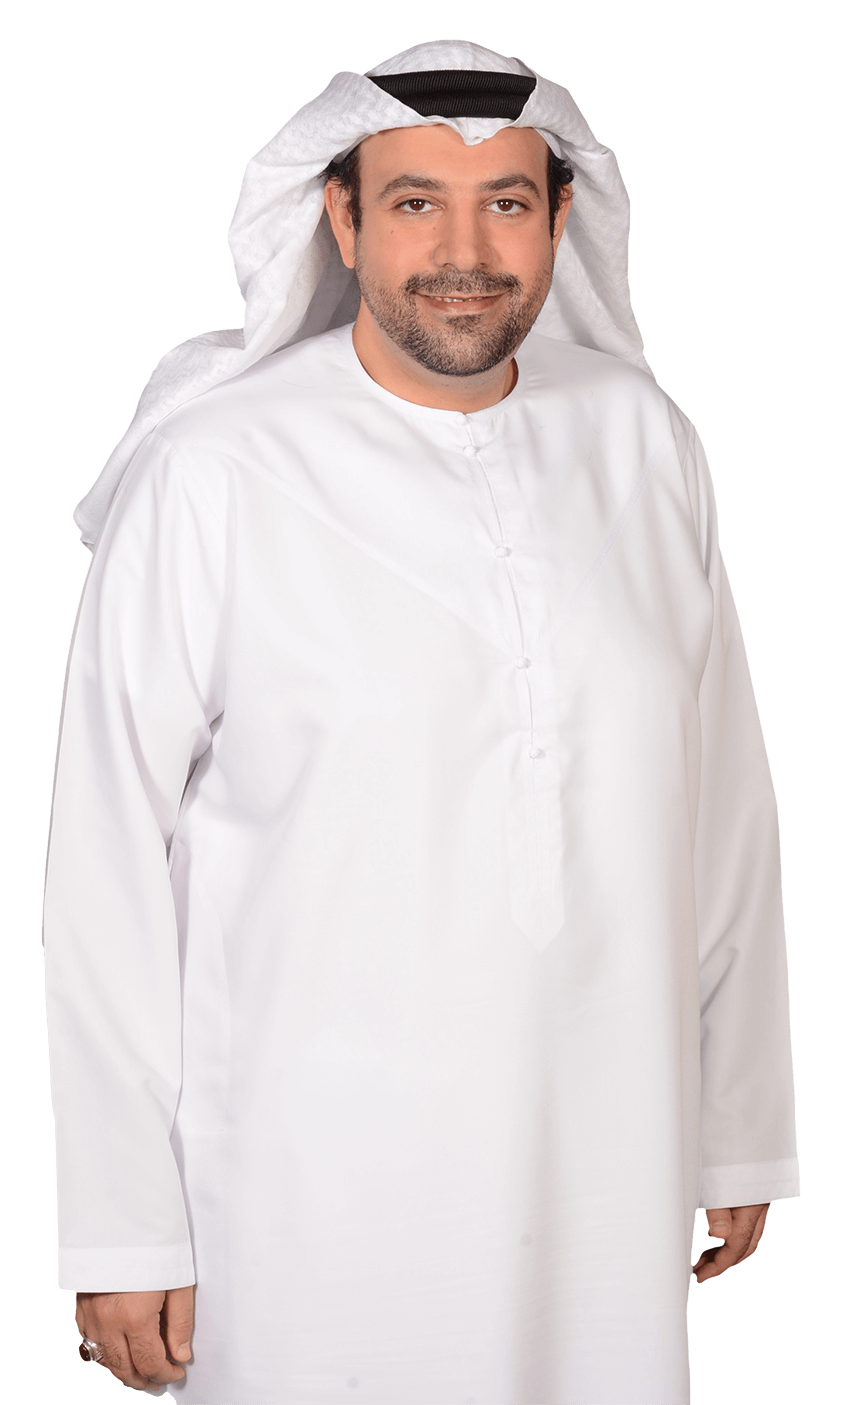 Dr. Mohamed Abuhaleeqa